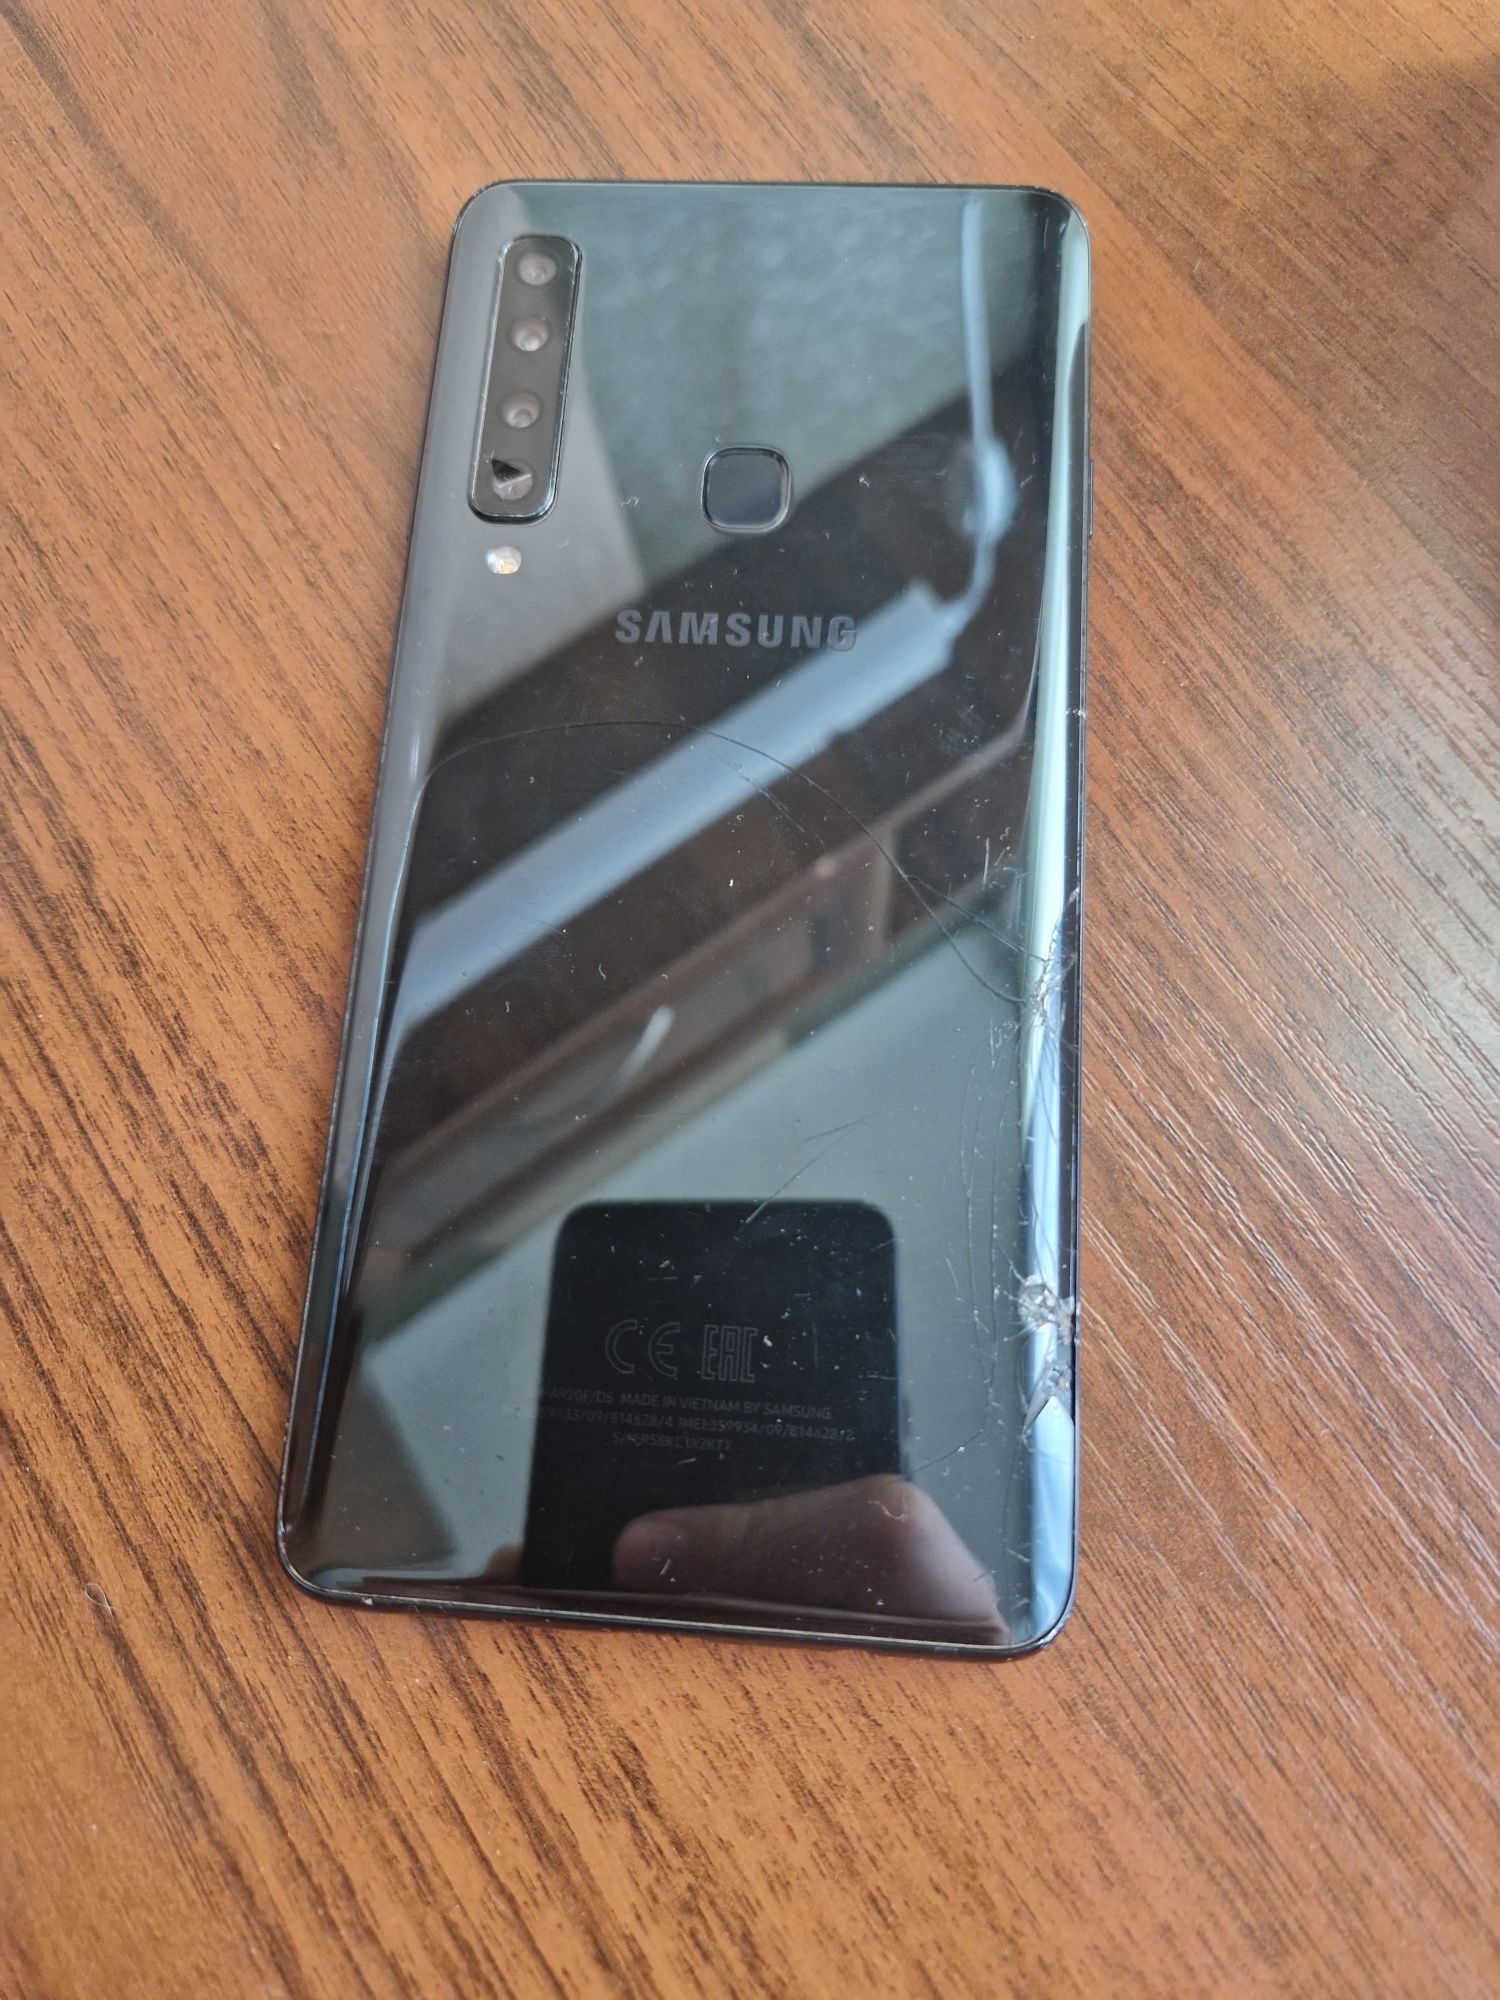 Samsung galaxy a9